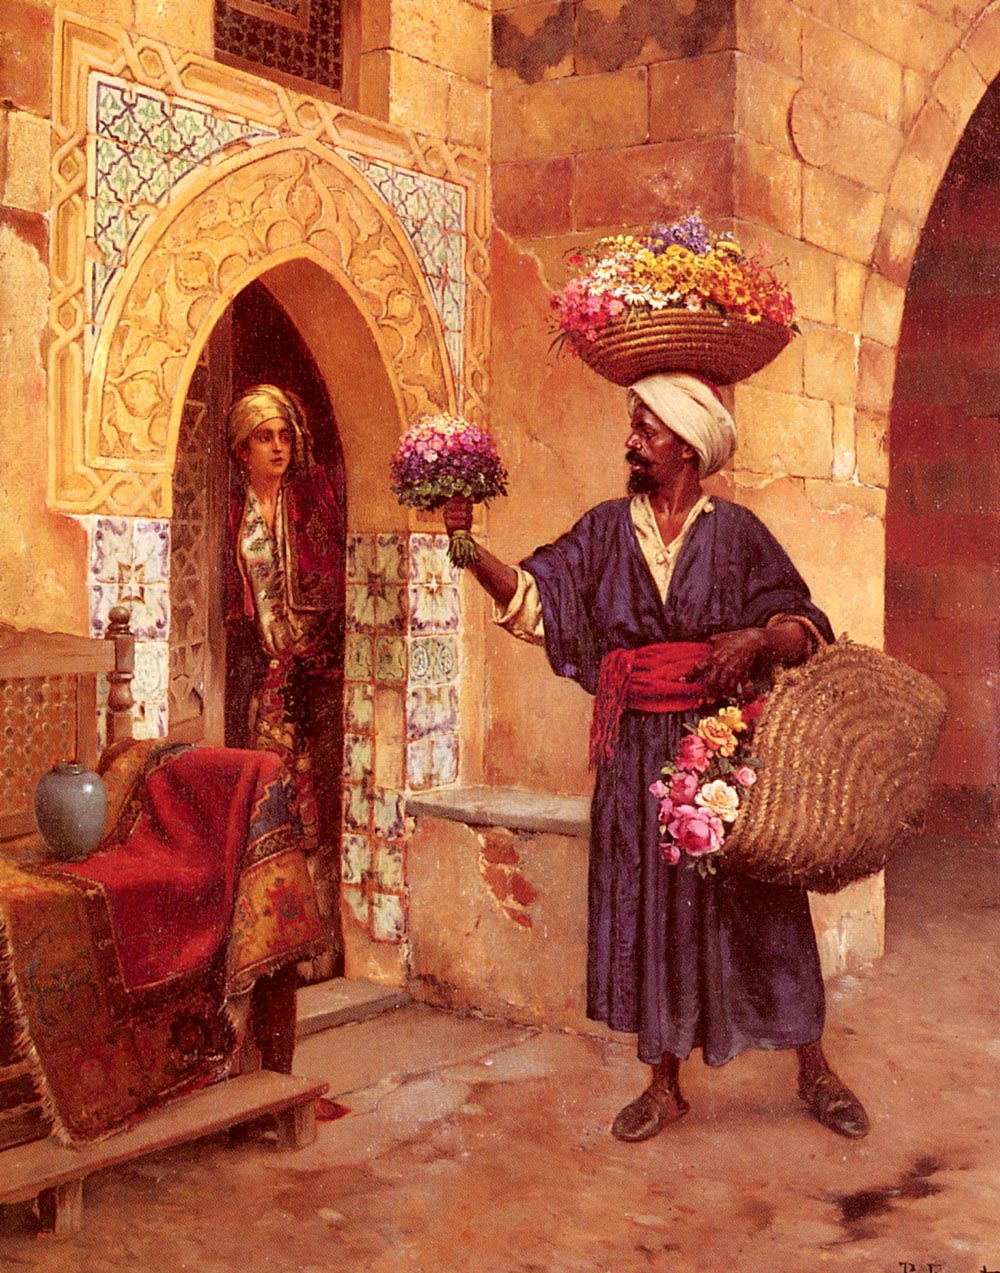 The Flower Merchant